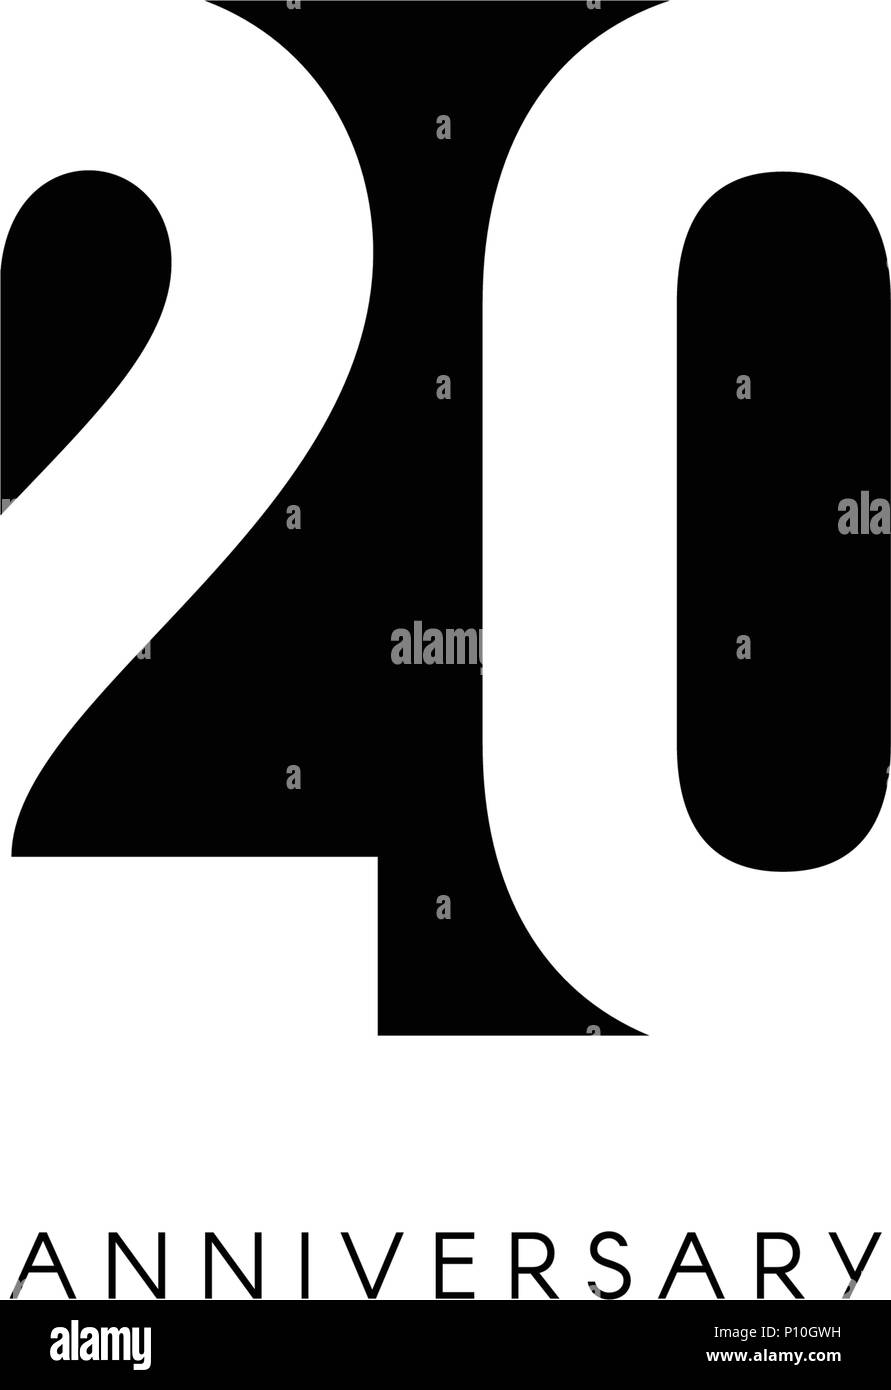 Vingt Ans Le Logo Minimaliste ans e Jubile Carte De Vœux Invitation D Anniversaire Ans Signe Illustration Vecteur De L Espace Negatif Noir Sur Fond Blanc Image Vectorielle Stock Alamy